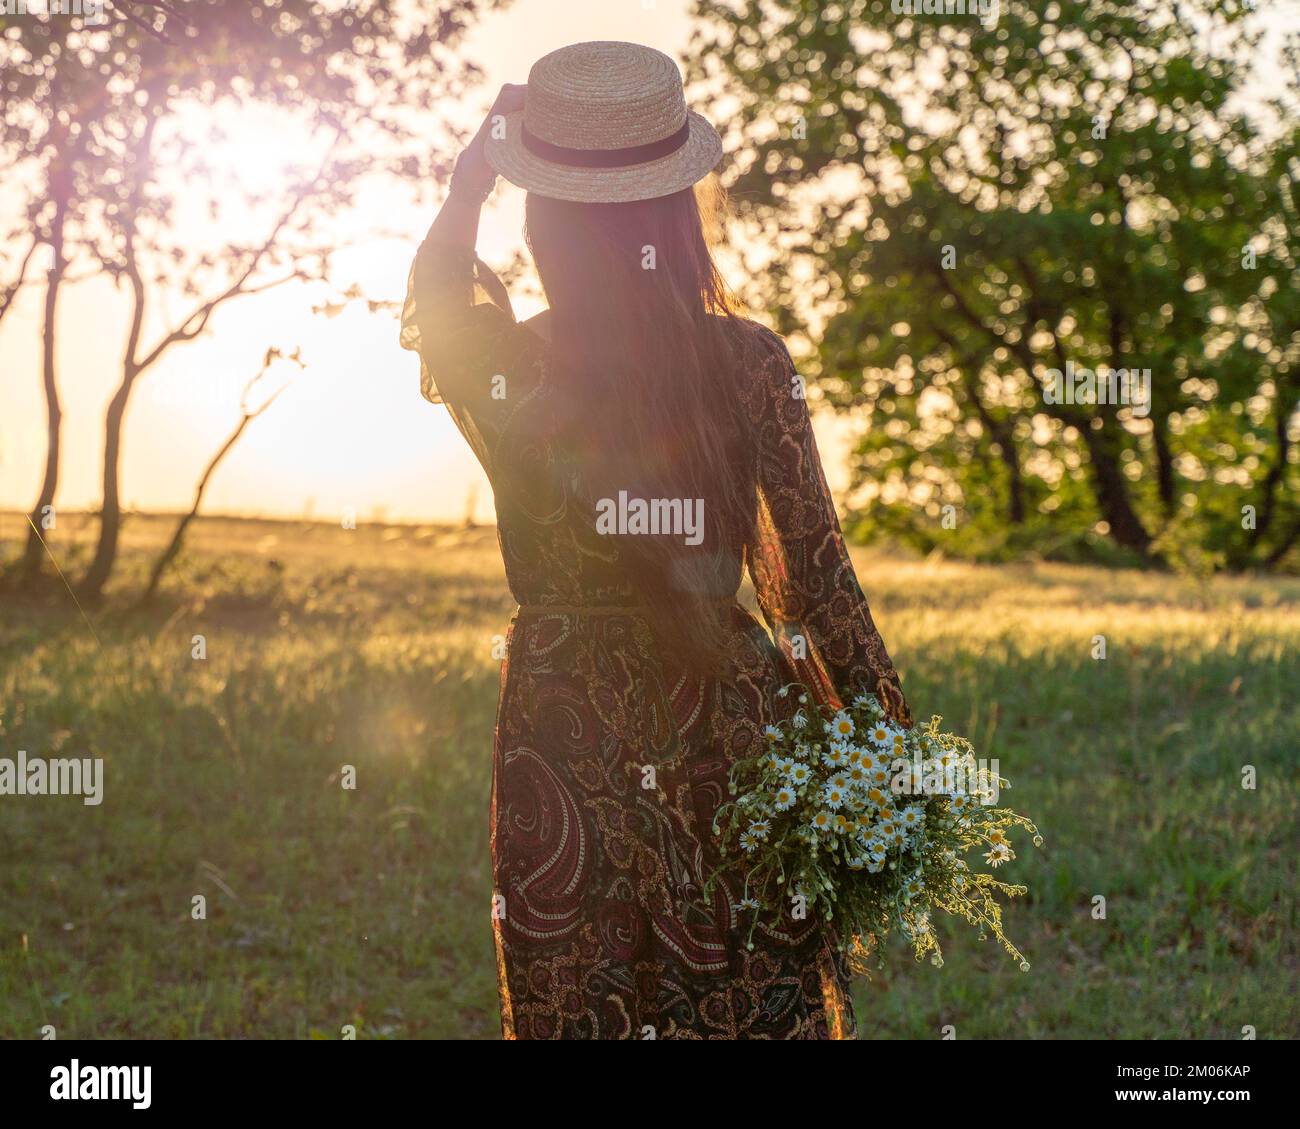 Eine glückliche Frau reist allein im Wald bei Sonnenuntergang, in einem langen Kleid, Hut und einem Blumenstrauß. Frohe Ferien. Rückansicht einer glücklichen Frau. Stockfoto